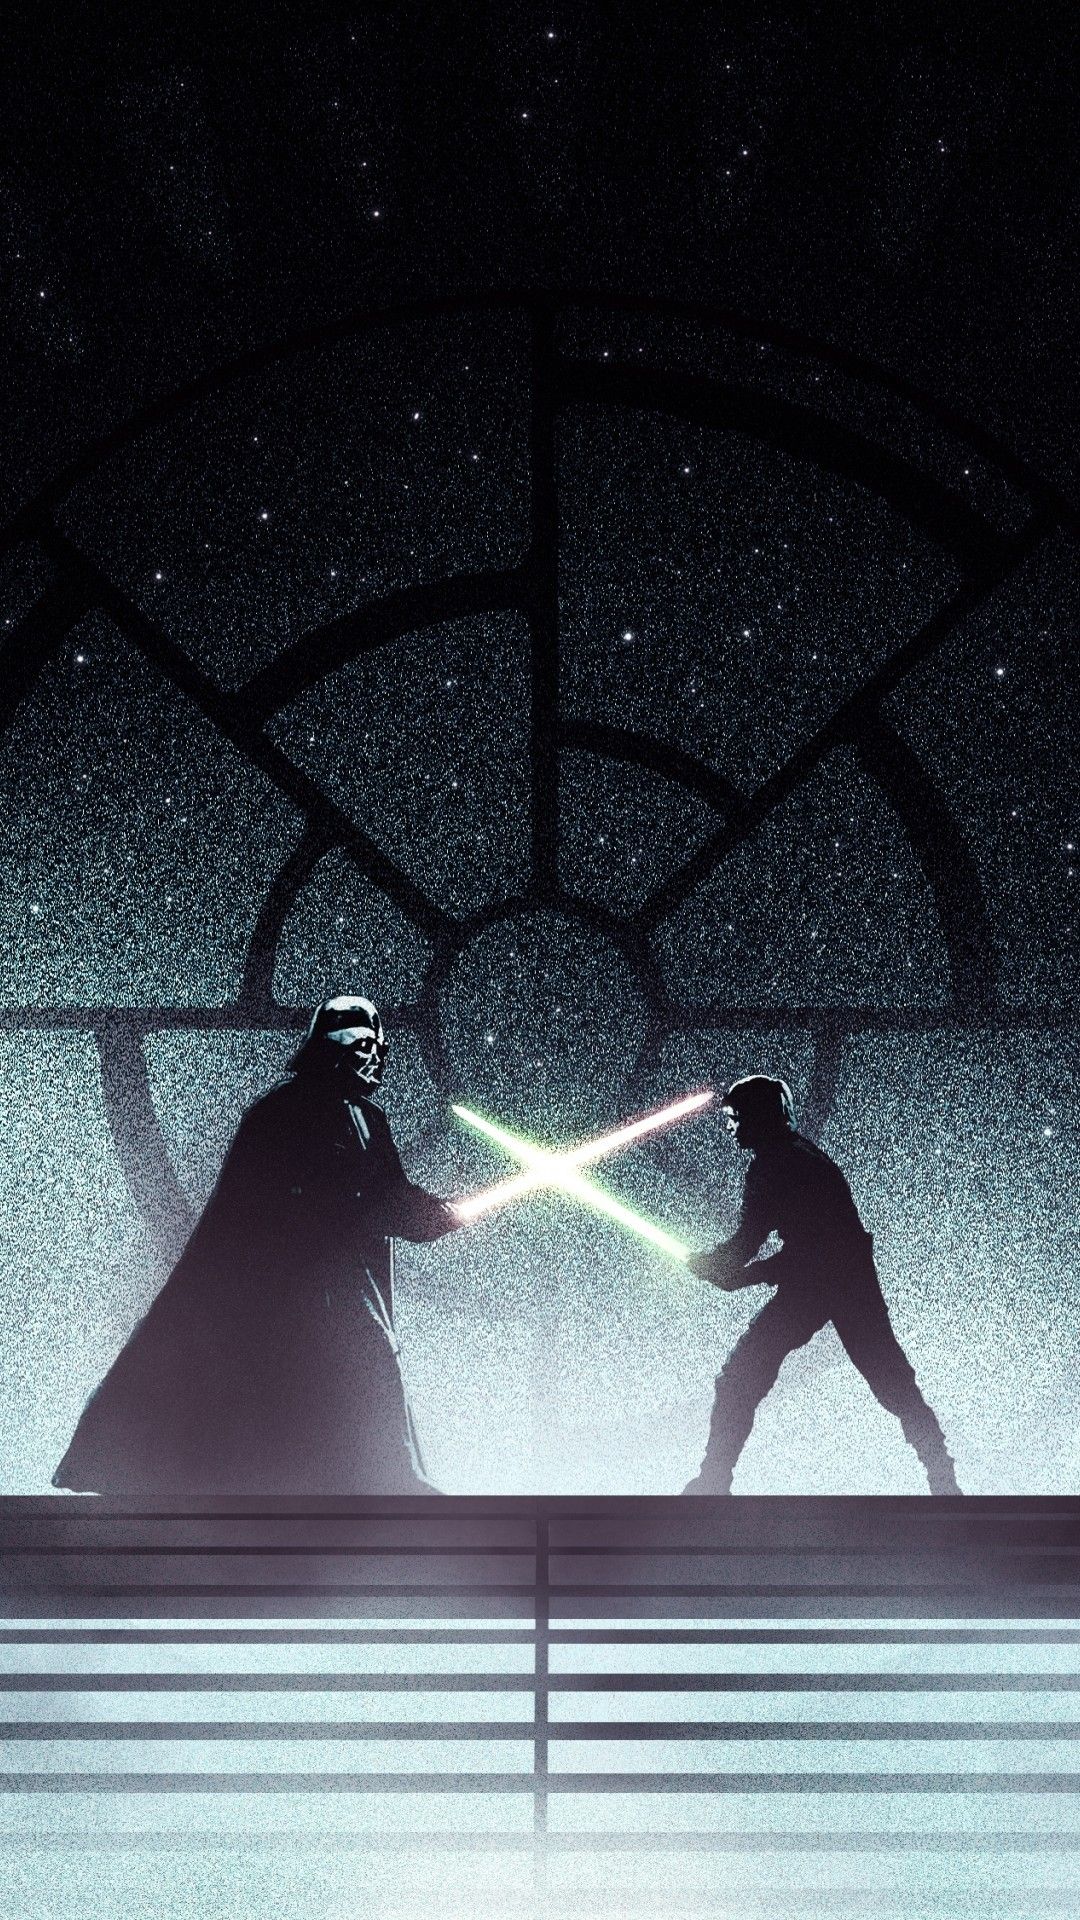 Luke Vs Darth Vader